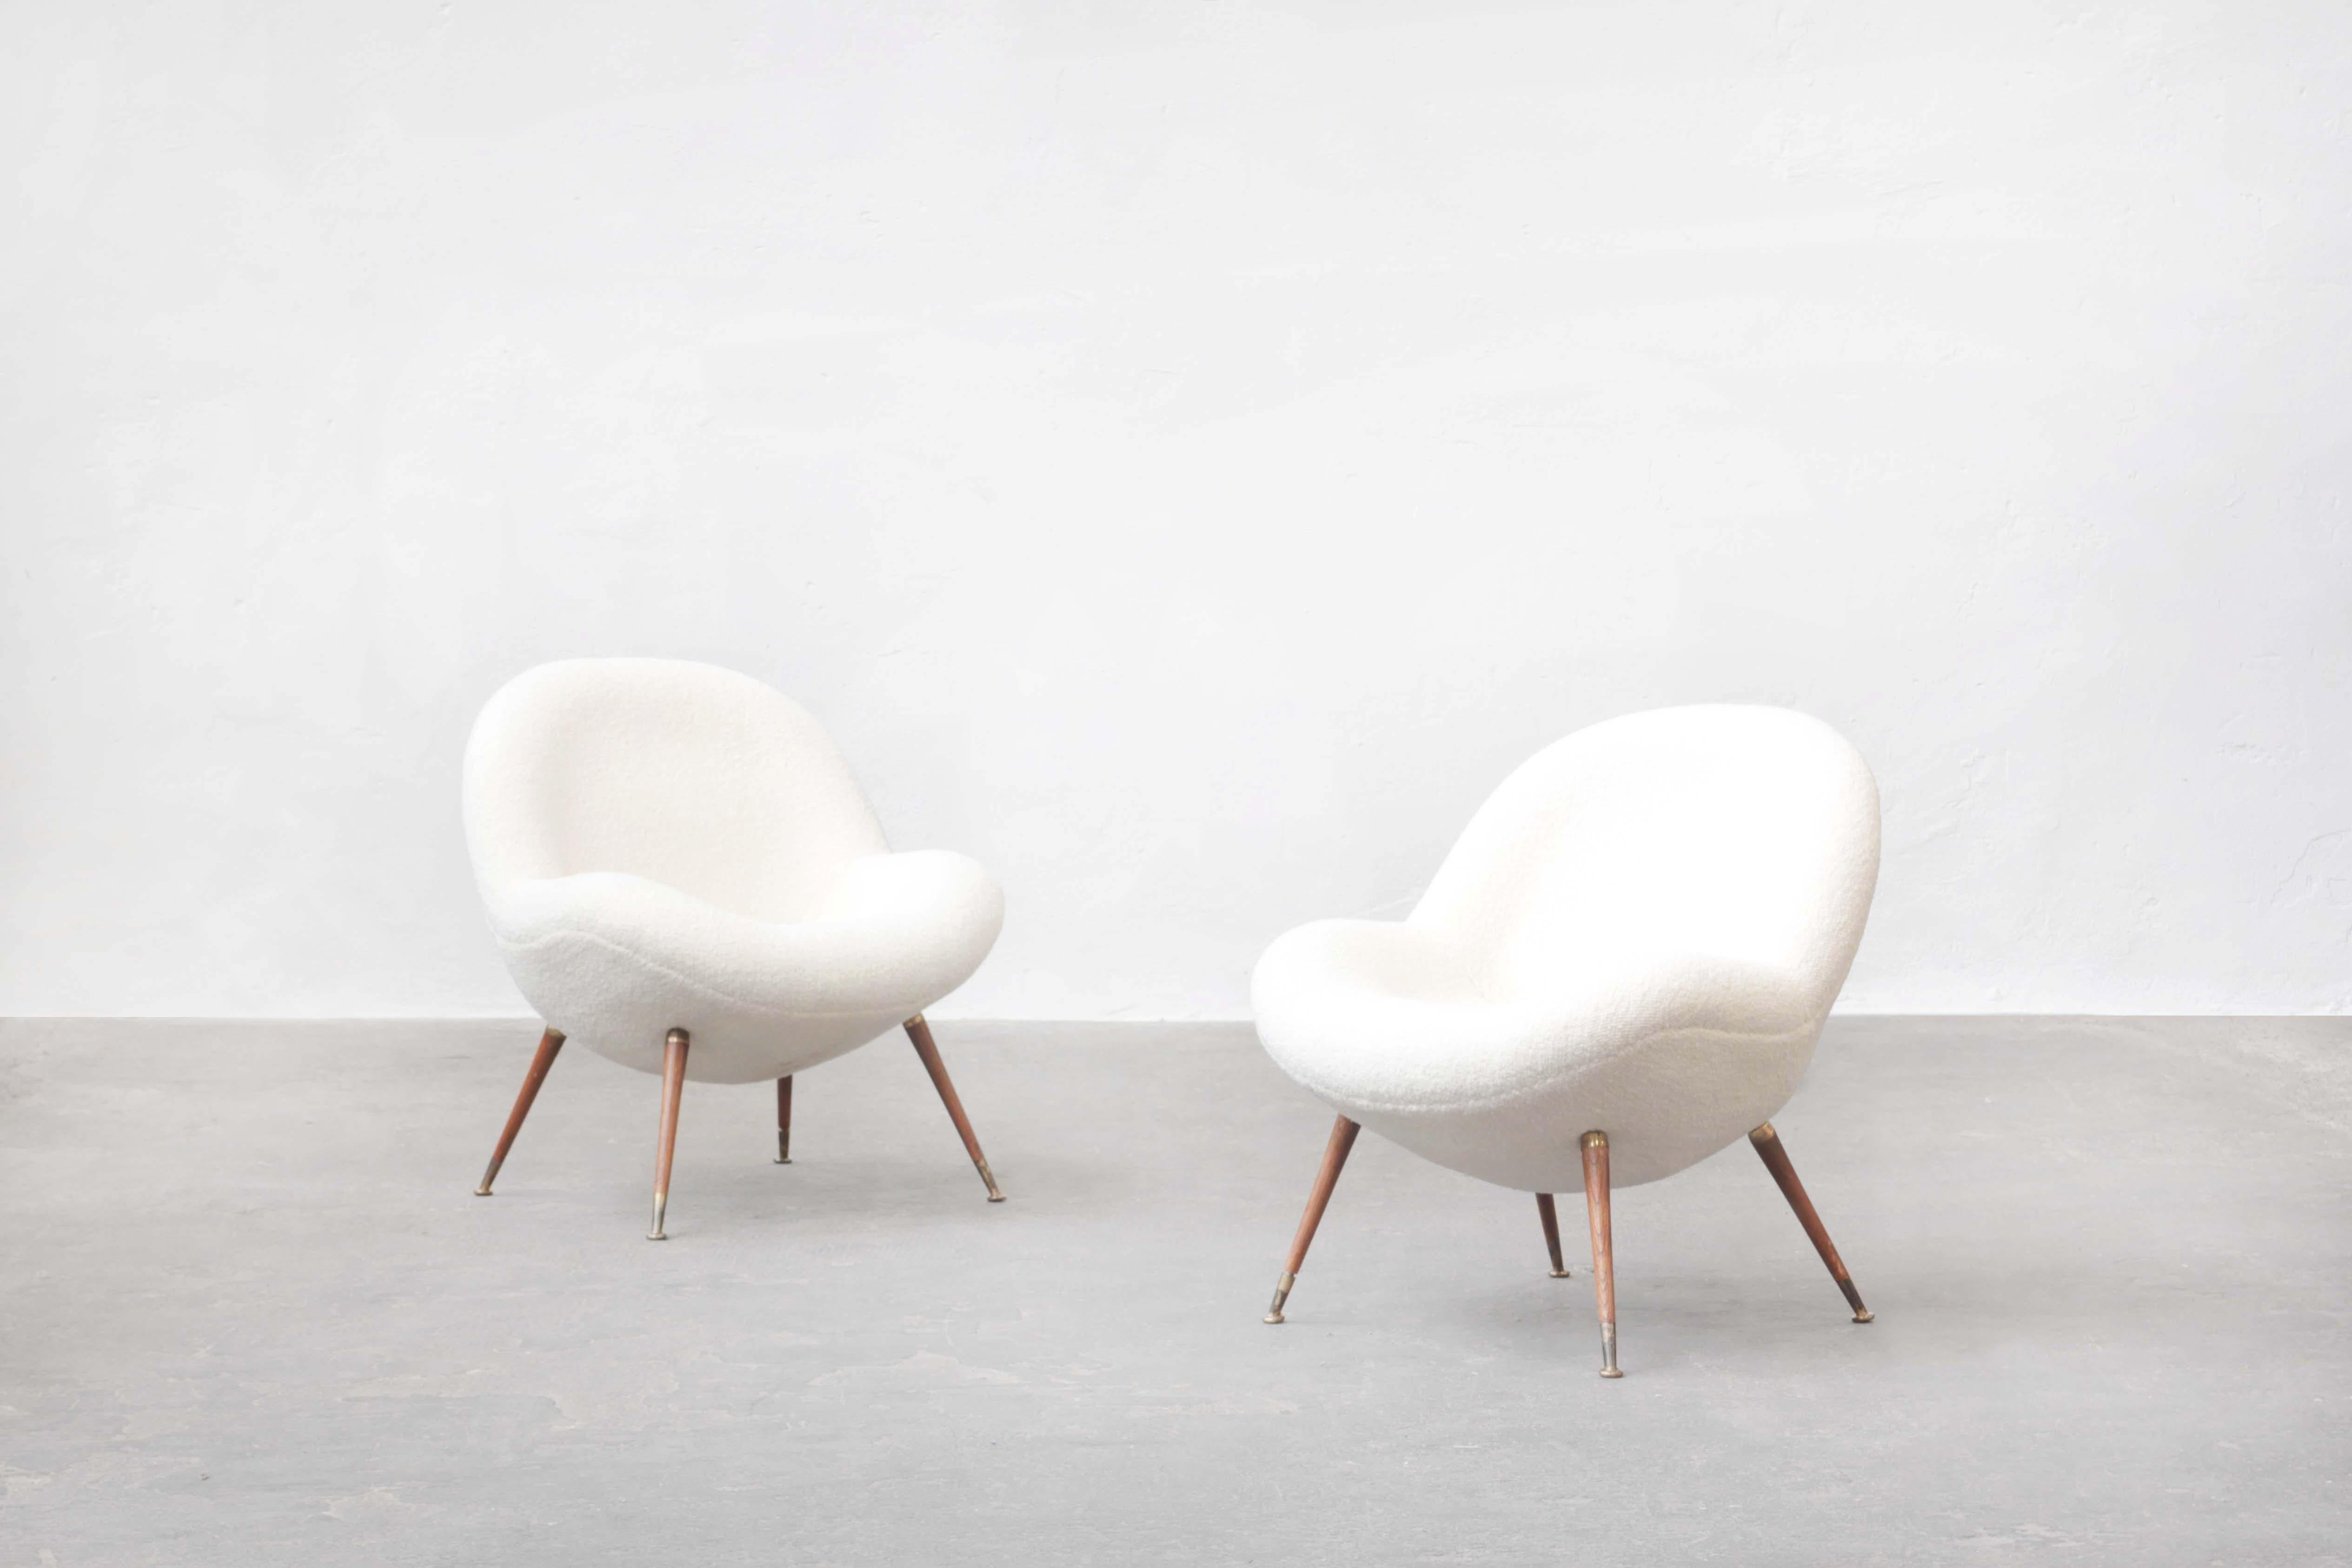 Chaise longue, nouveau revêtement, boucle de crème blanche par Dedar, pieds en bois avec éléments en laiton, conçu par Fritz-Brass et produit par Correcta en Allemagne, 1955.

Une chaise longue unique, conçue par l'Allemand Fritz Neth dans les